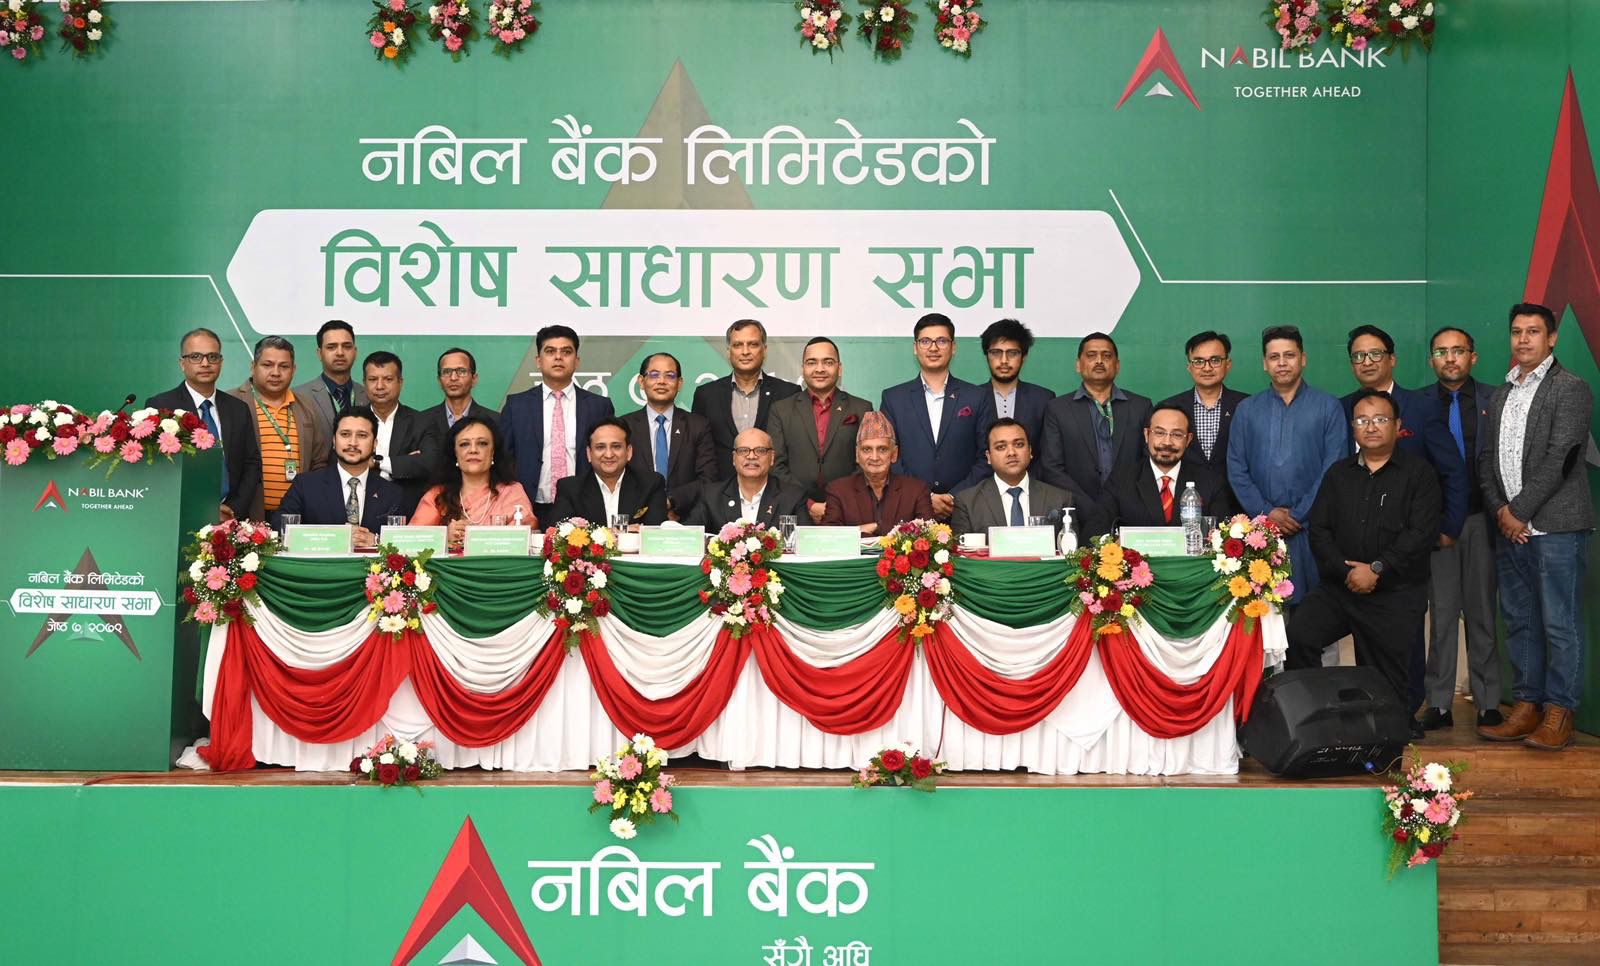 नेपाल बङ्गलादेश बैंकलाई प्राप्ति गर्ने प्रस्ताव नबिल बैंकको विशेष साधारणसभाबाट पारित